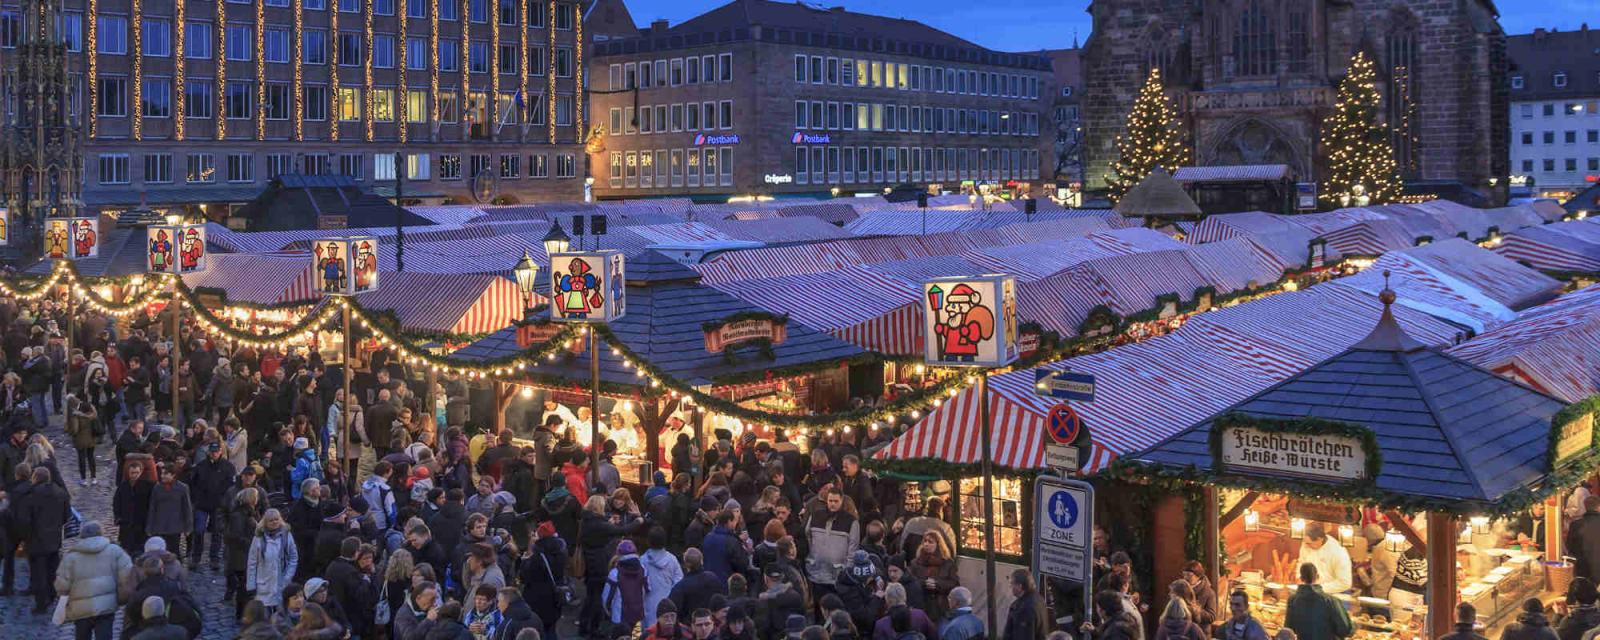 5 tips voor een gezellige kerst in Neurenberg | CityZapper 